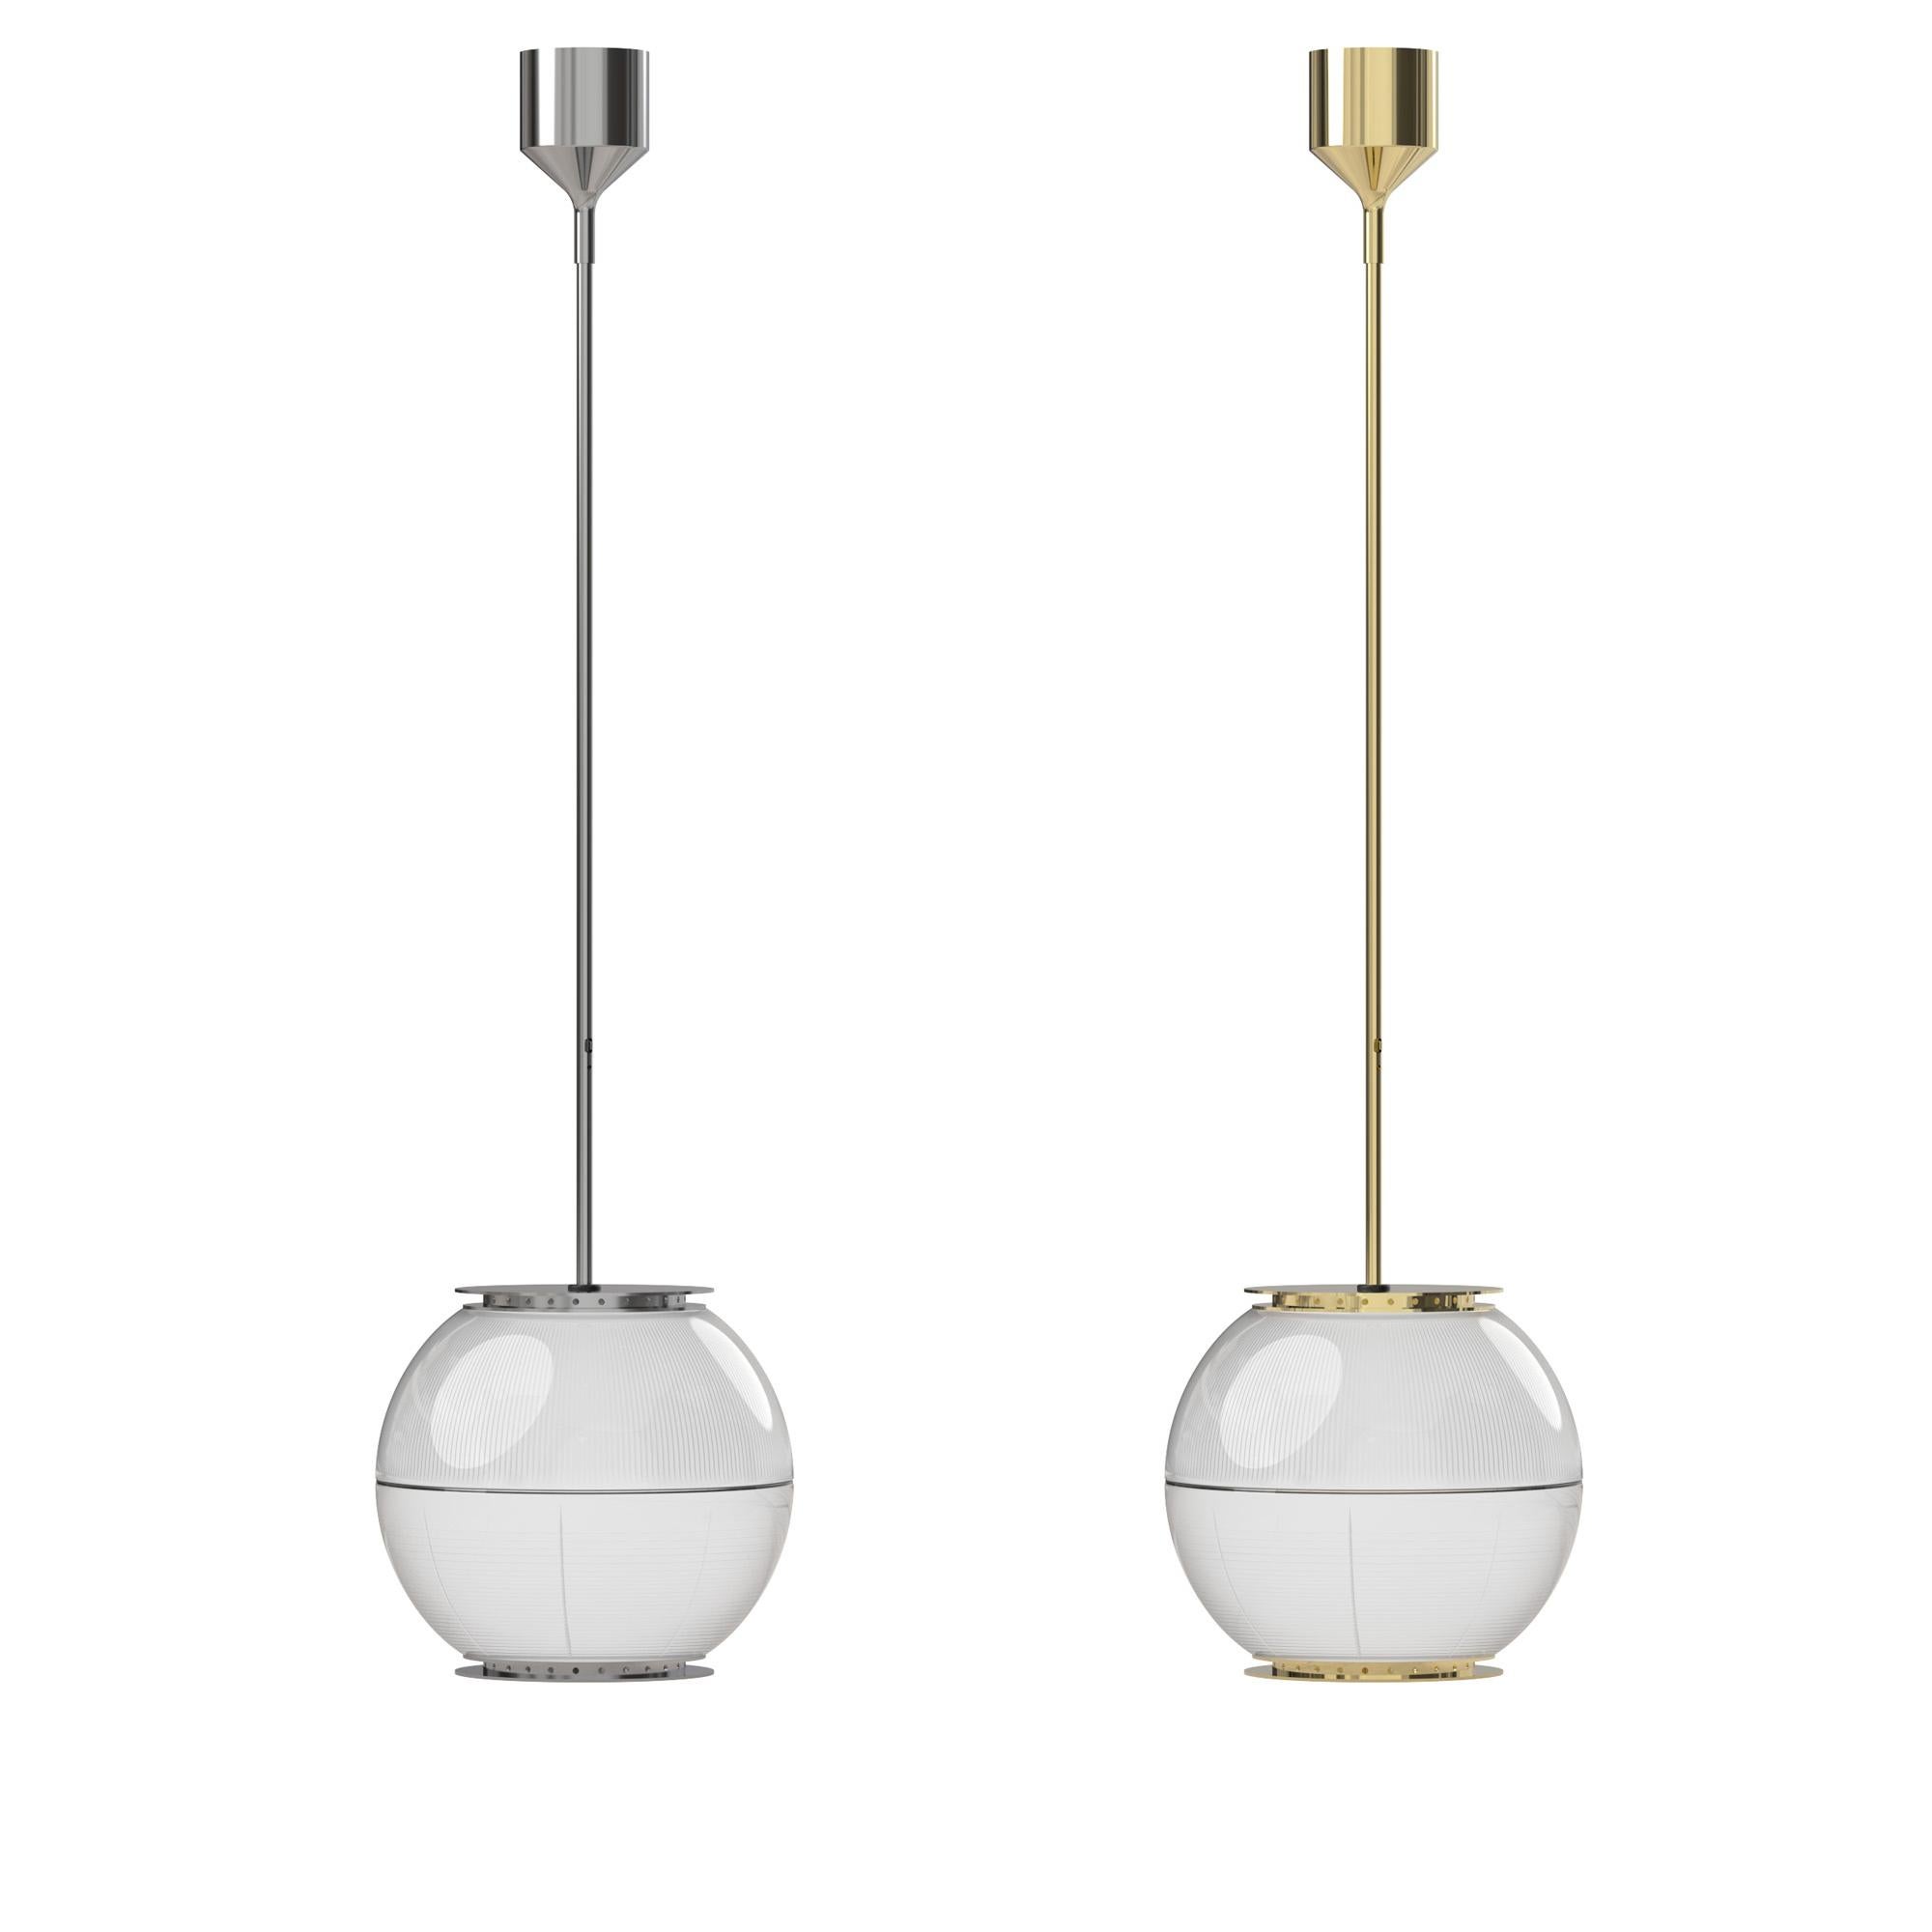 Contemporary Ignazio Gardella 'Doppio Vetro' Pendant Lamp in Brass and Glass for Tato Italia For Sale